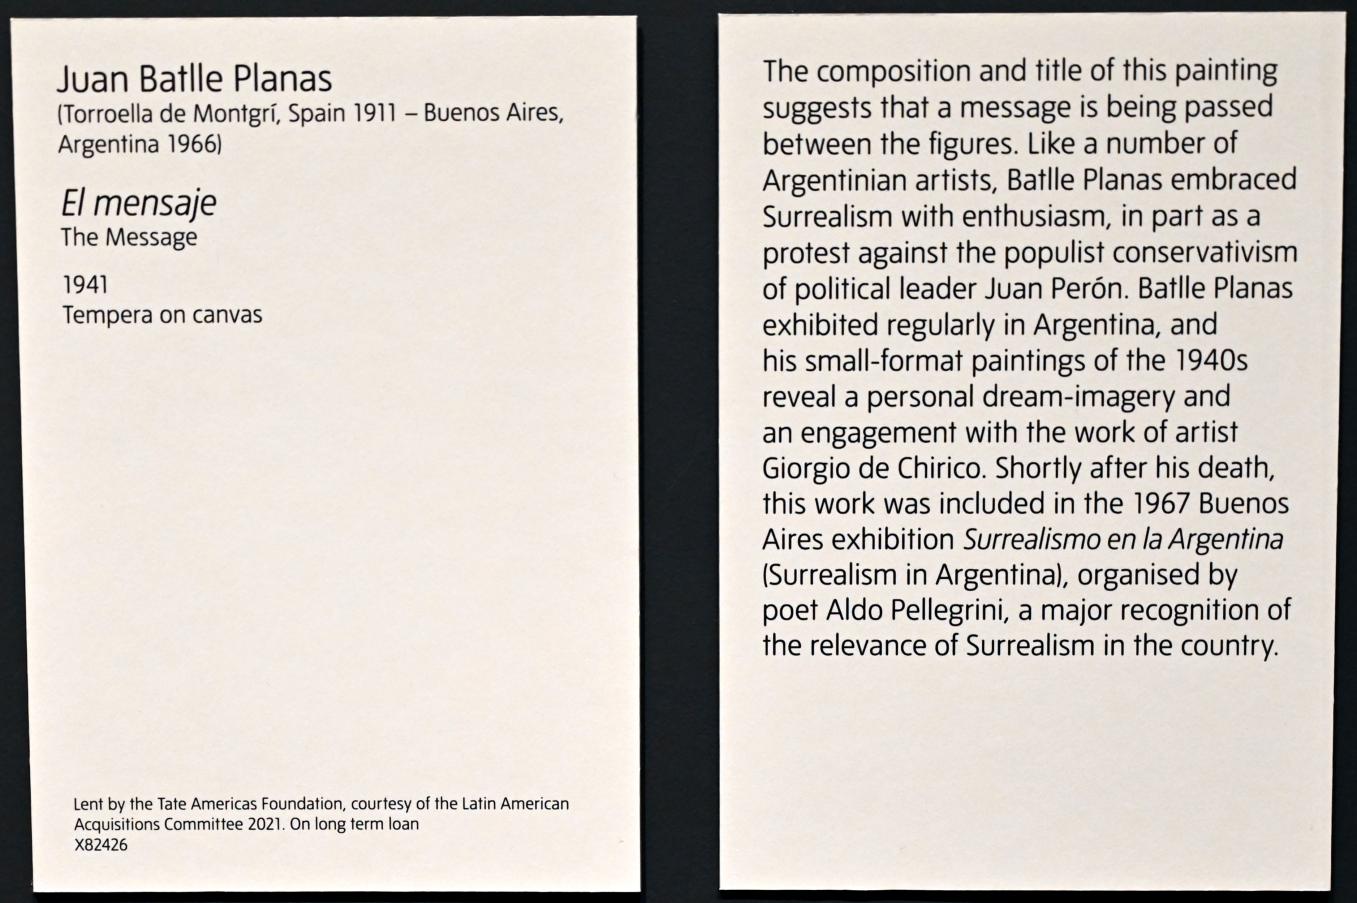 Juan Batlle Planas (1941), Die Nachricht, London, Tate Modern, Ausstellung "Surrealism Beyond Borders" vom 24.02.-29.08.2022, Saal 3, 1941, Bild 2/2